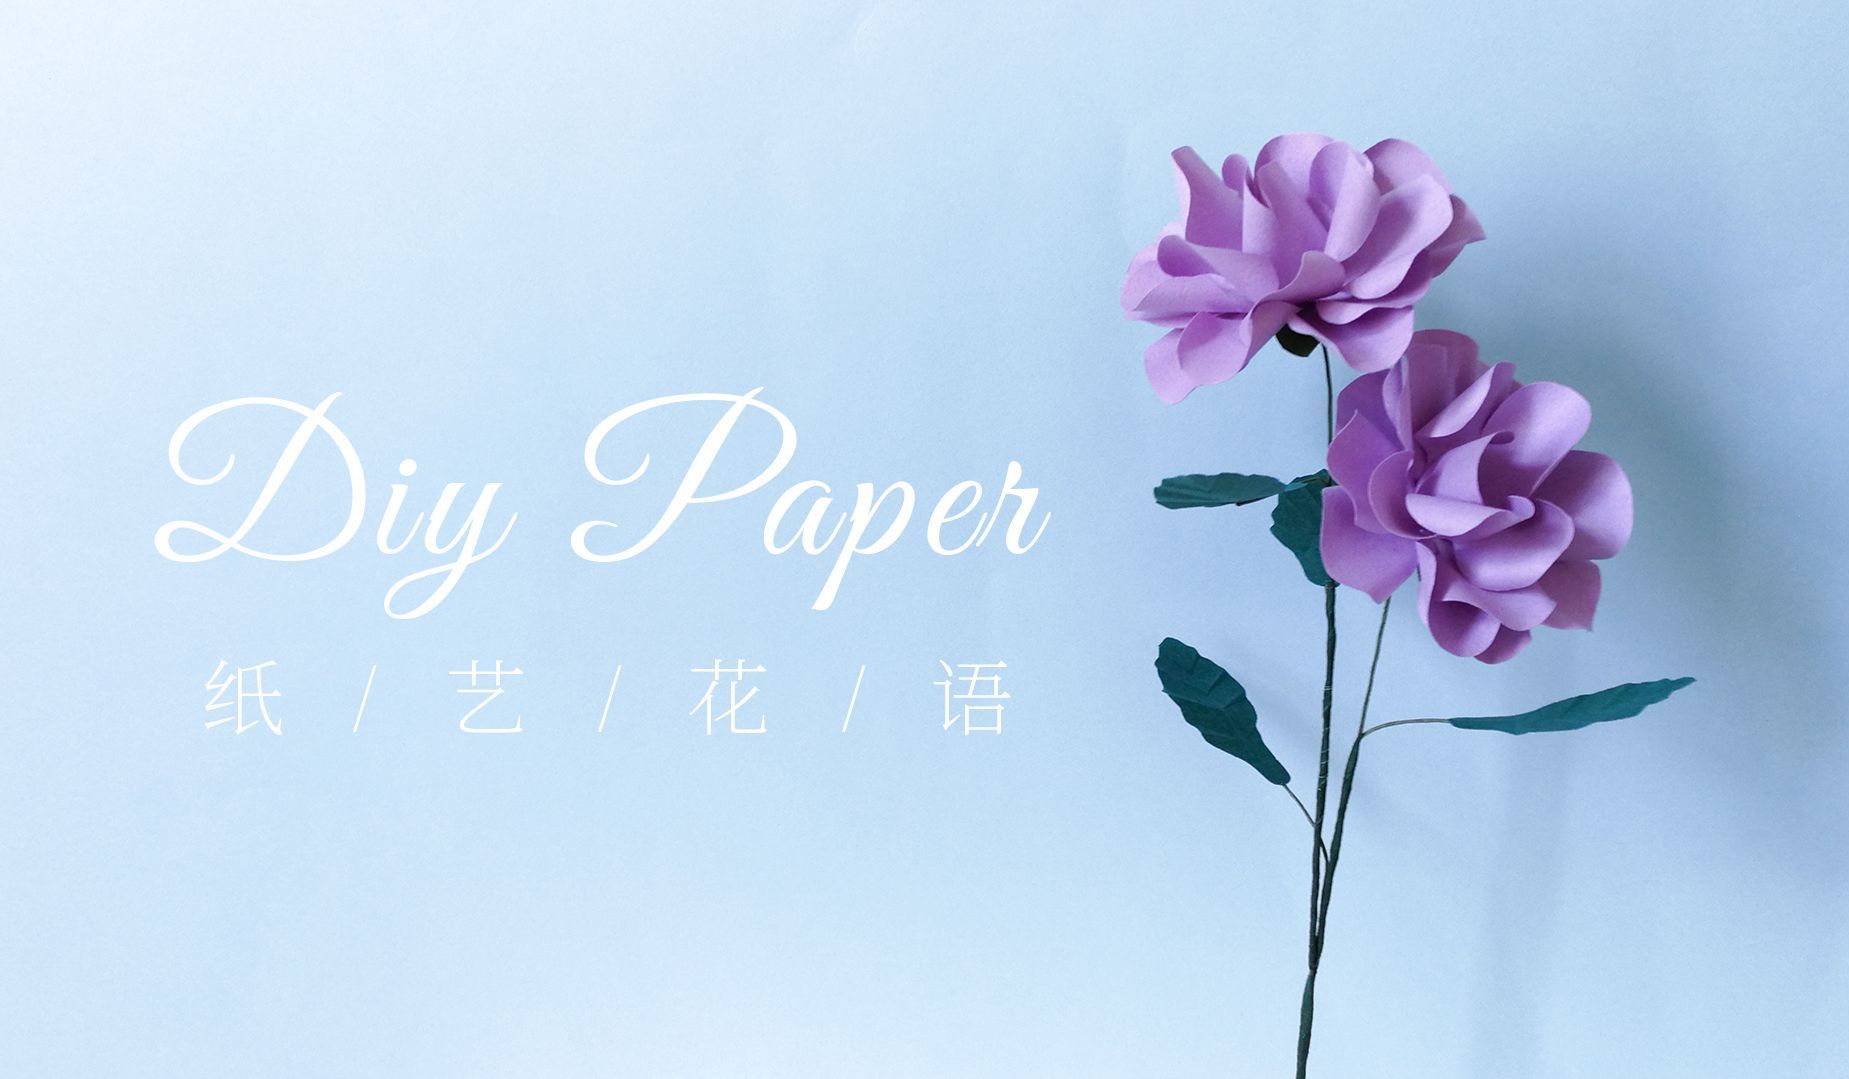 手工DIY纸艺，用纸制作漂亮的洋桔梗——《纸艺花语》